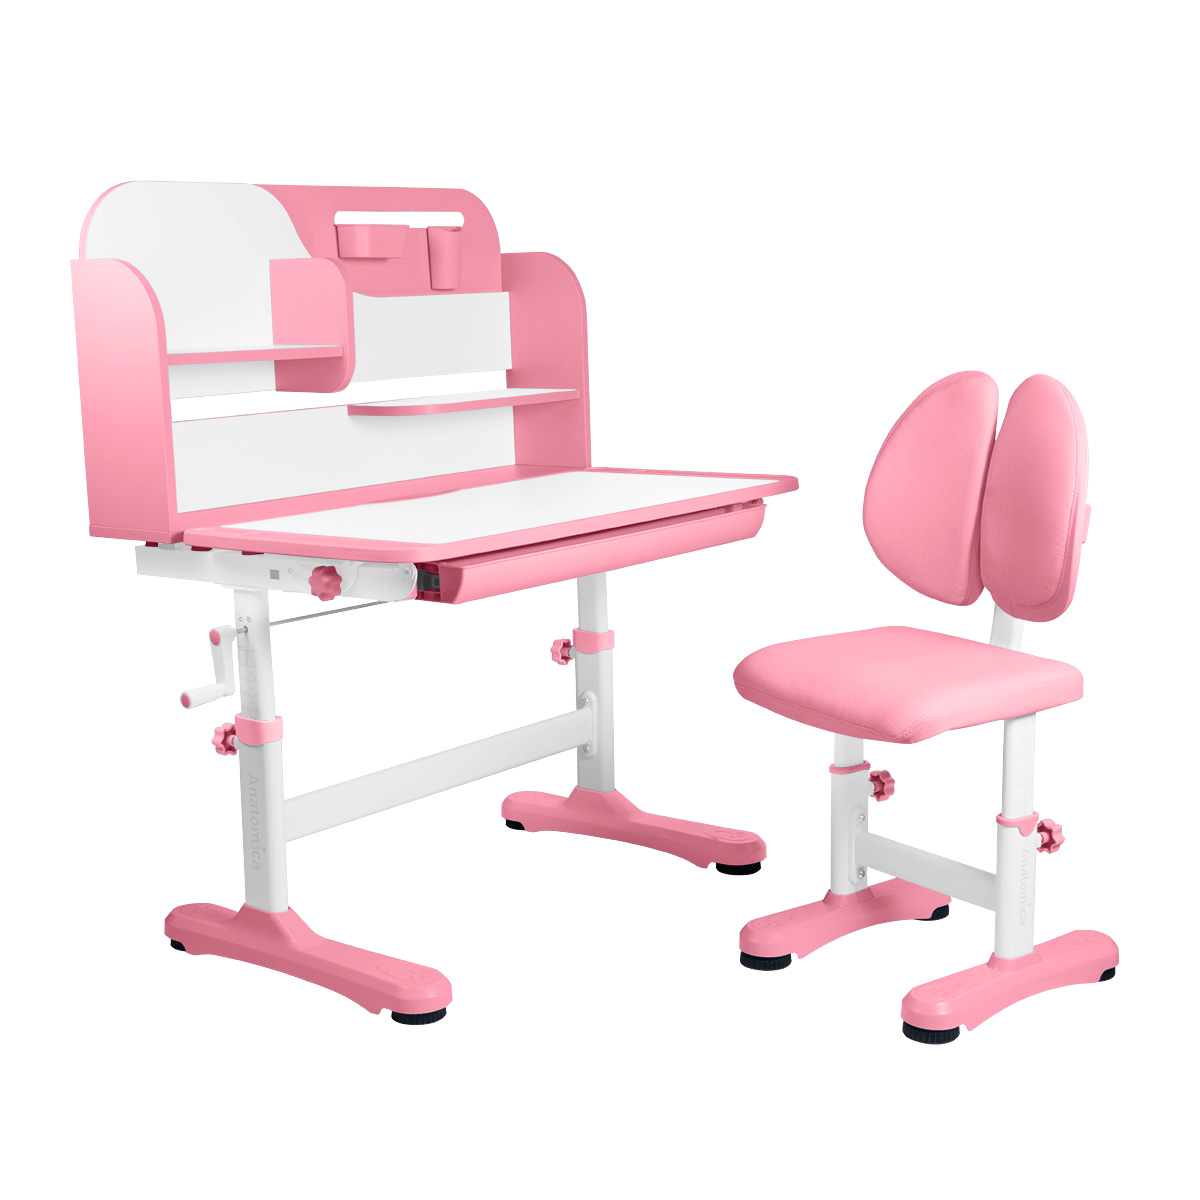 Комплект Anatomica Amadeo парта, стул, надстройка, выдвижной ящик, розовый комплект kinderzen arlekino парта стул выдвижной ящик розовый